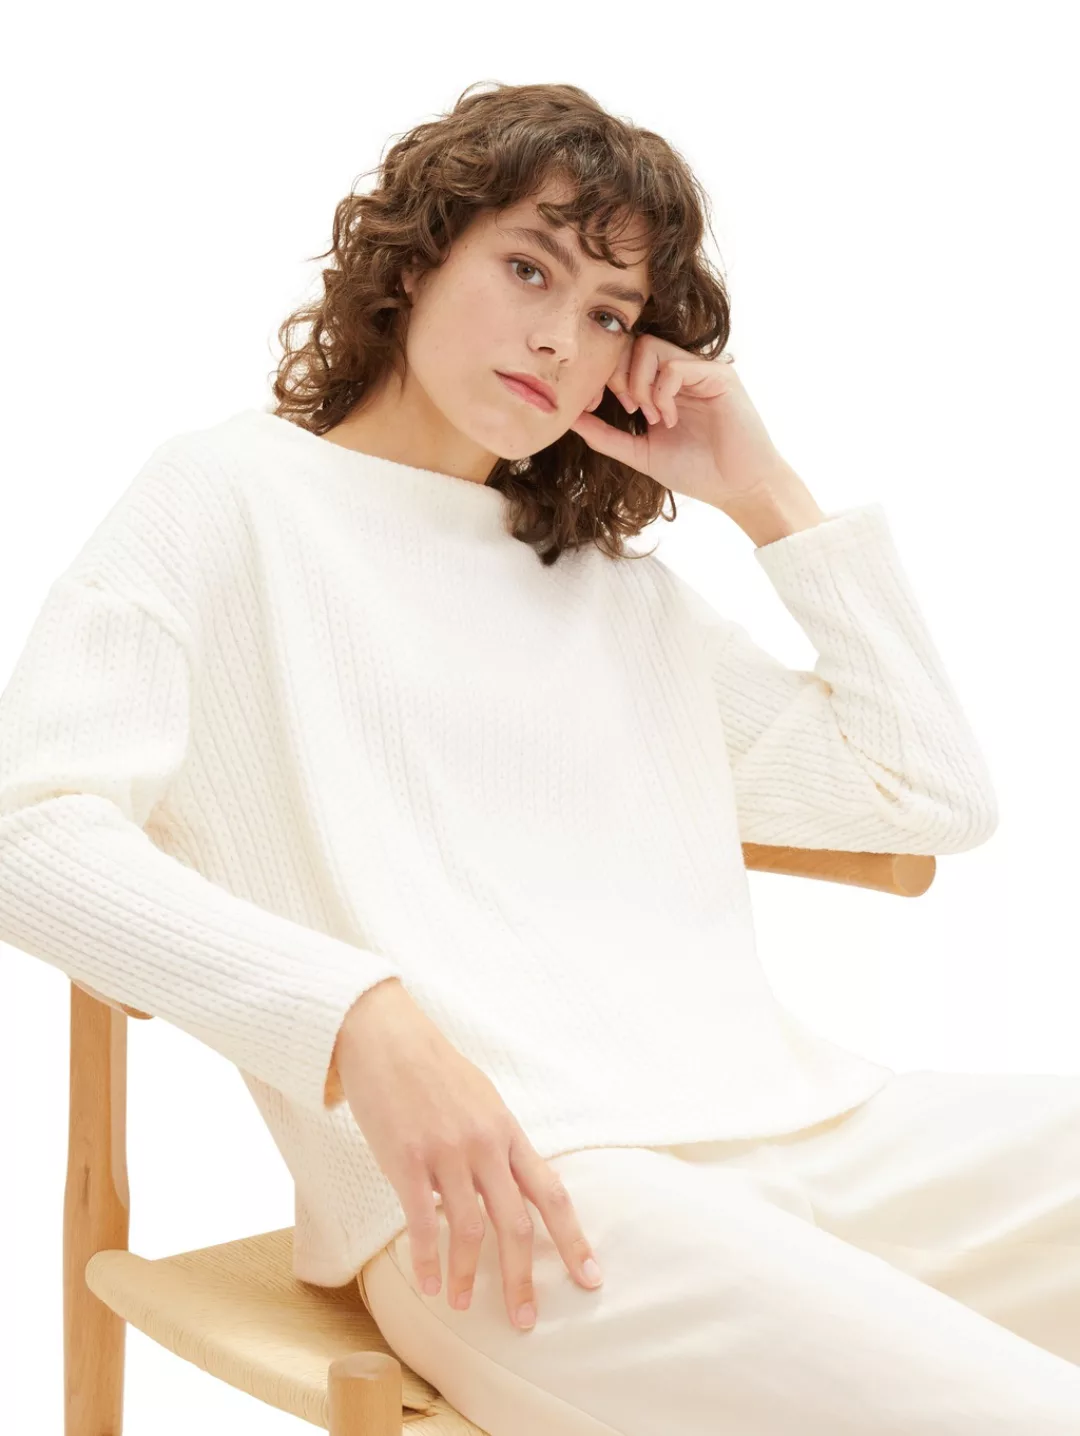 TOM TAILOR Sweatshirt mit Drop-Shoulder Naht günstig online kaufen